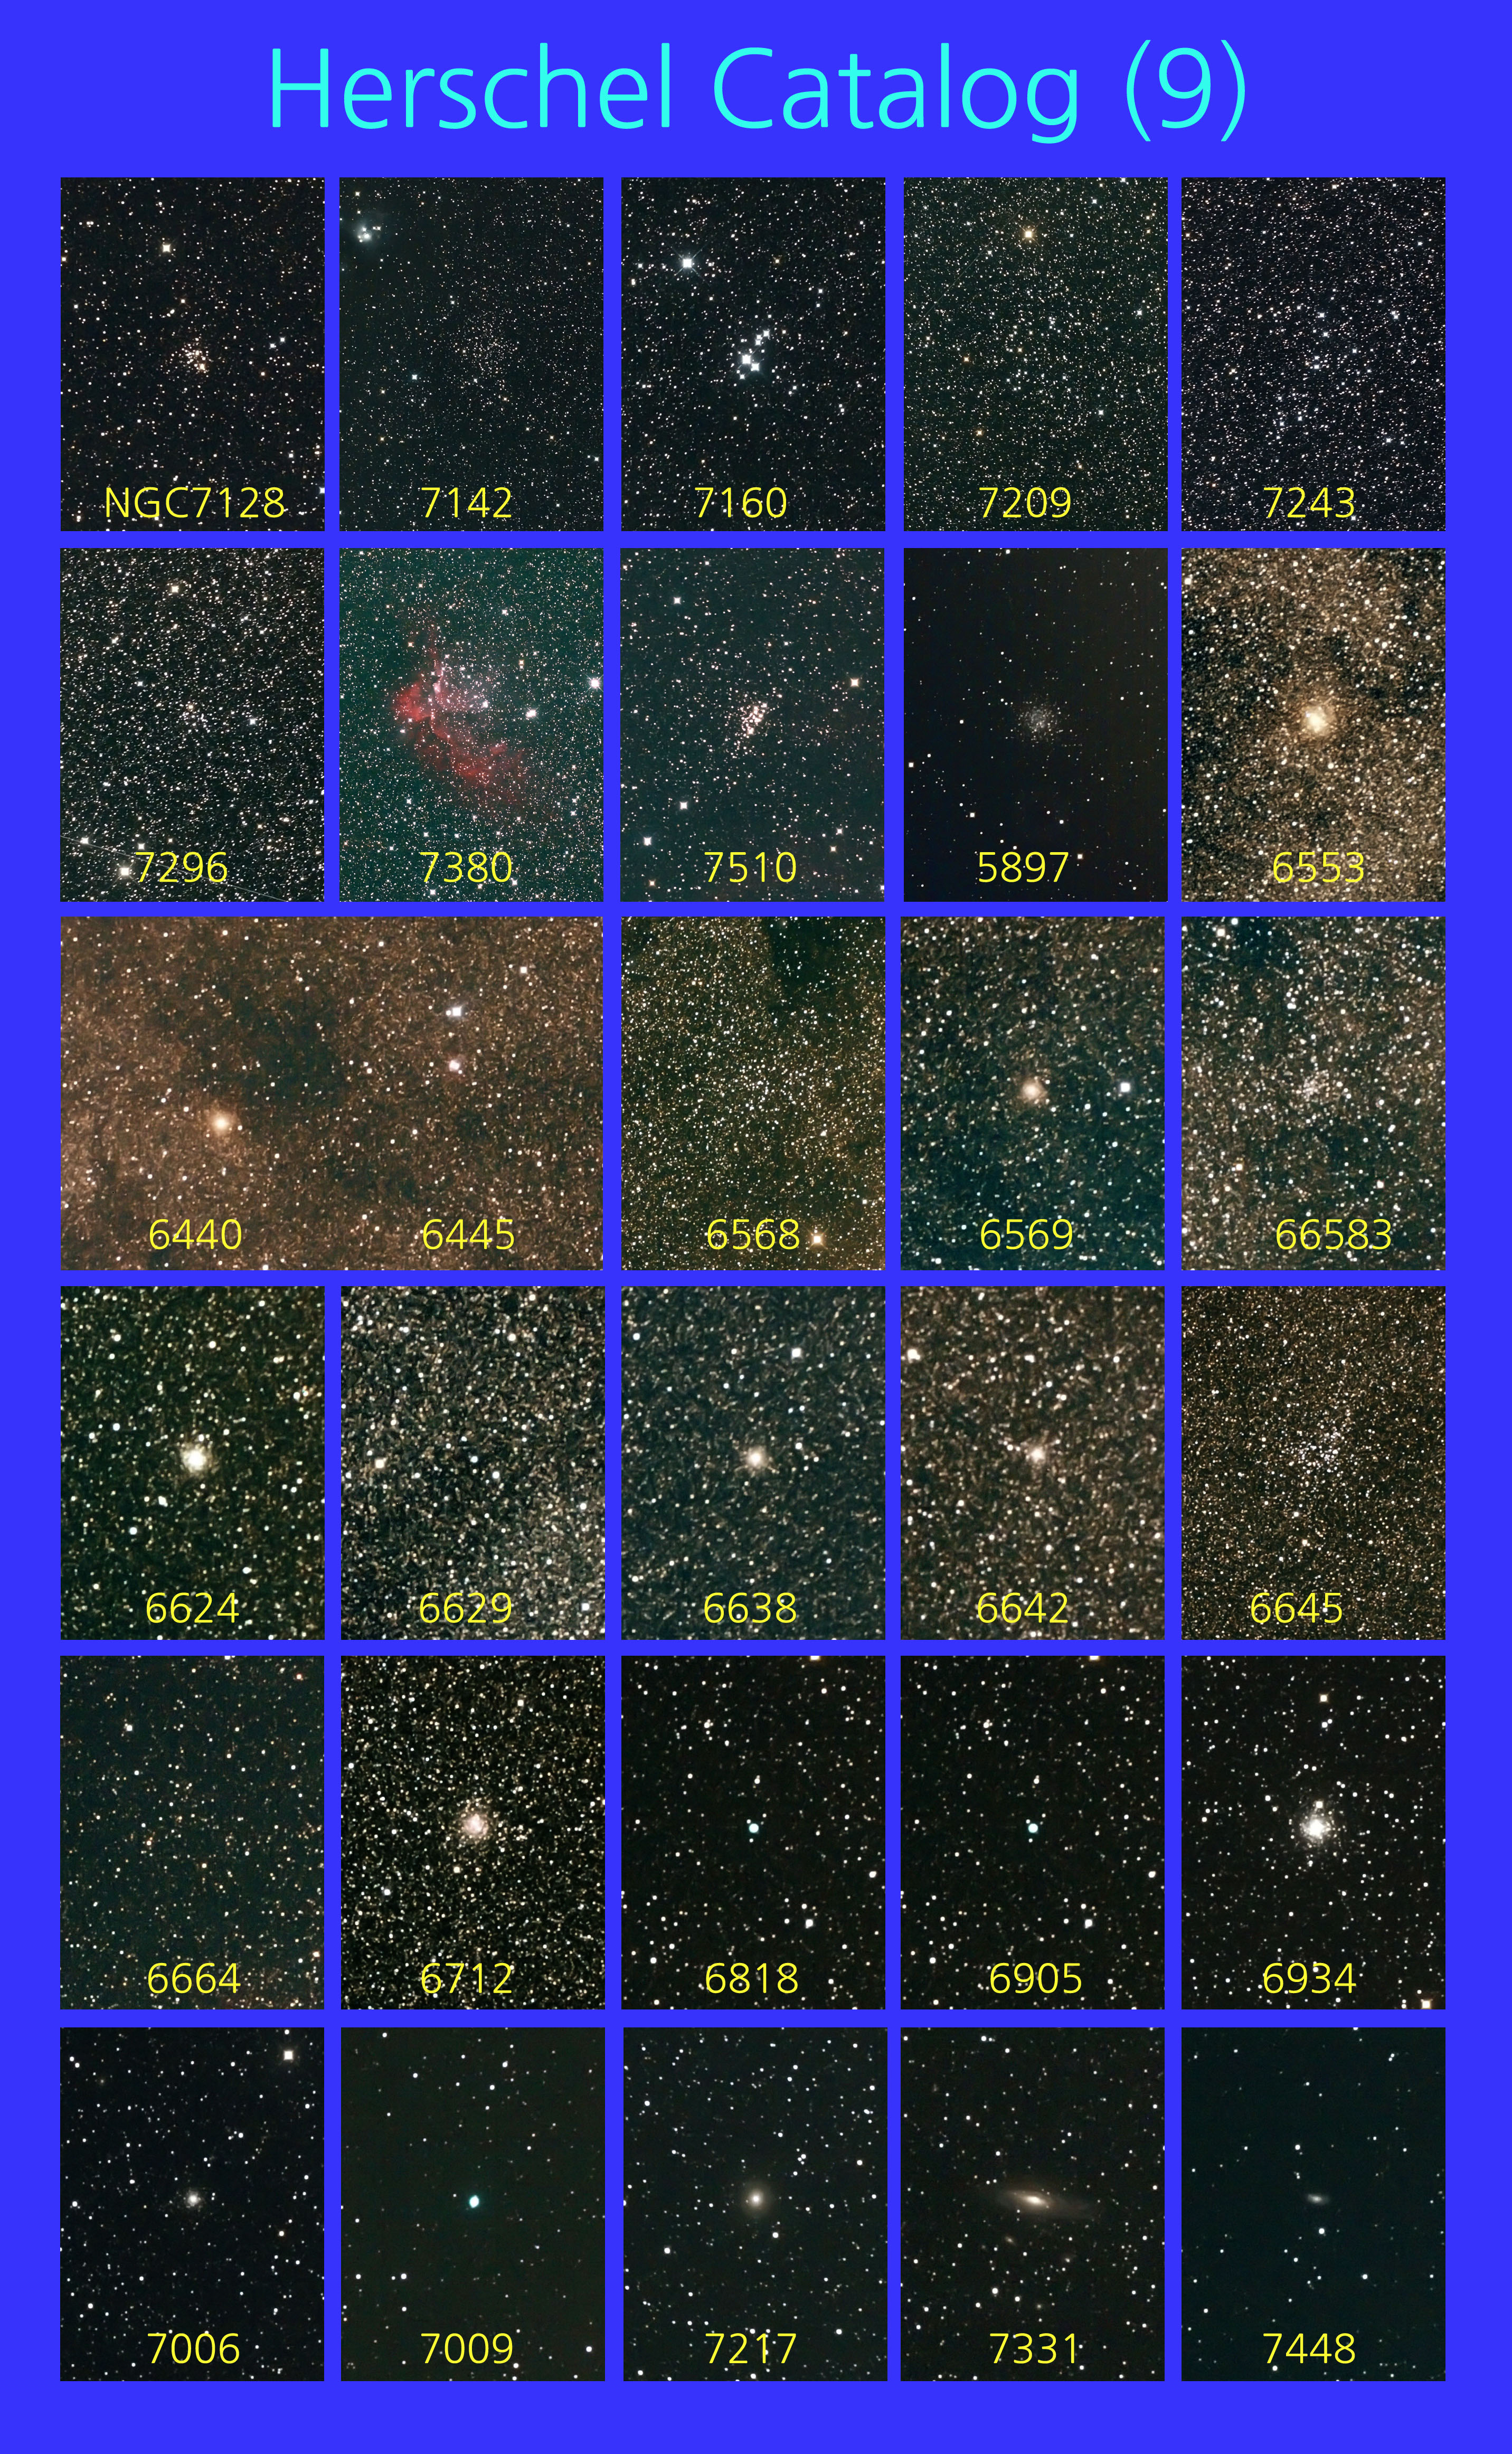 Herschel-509-150826s.jpg